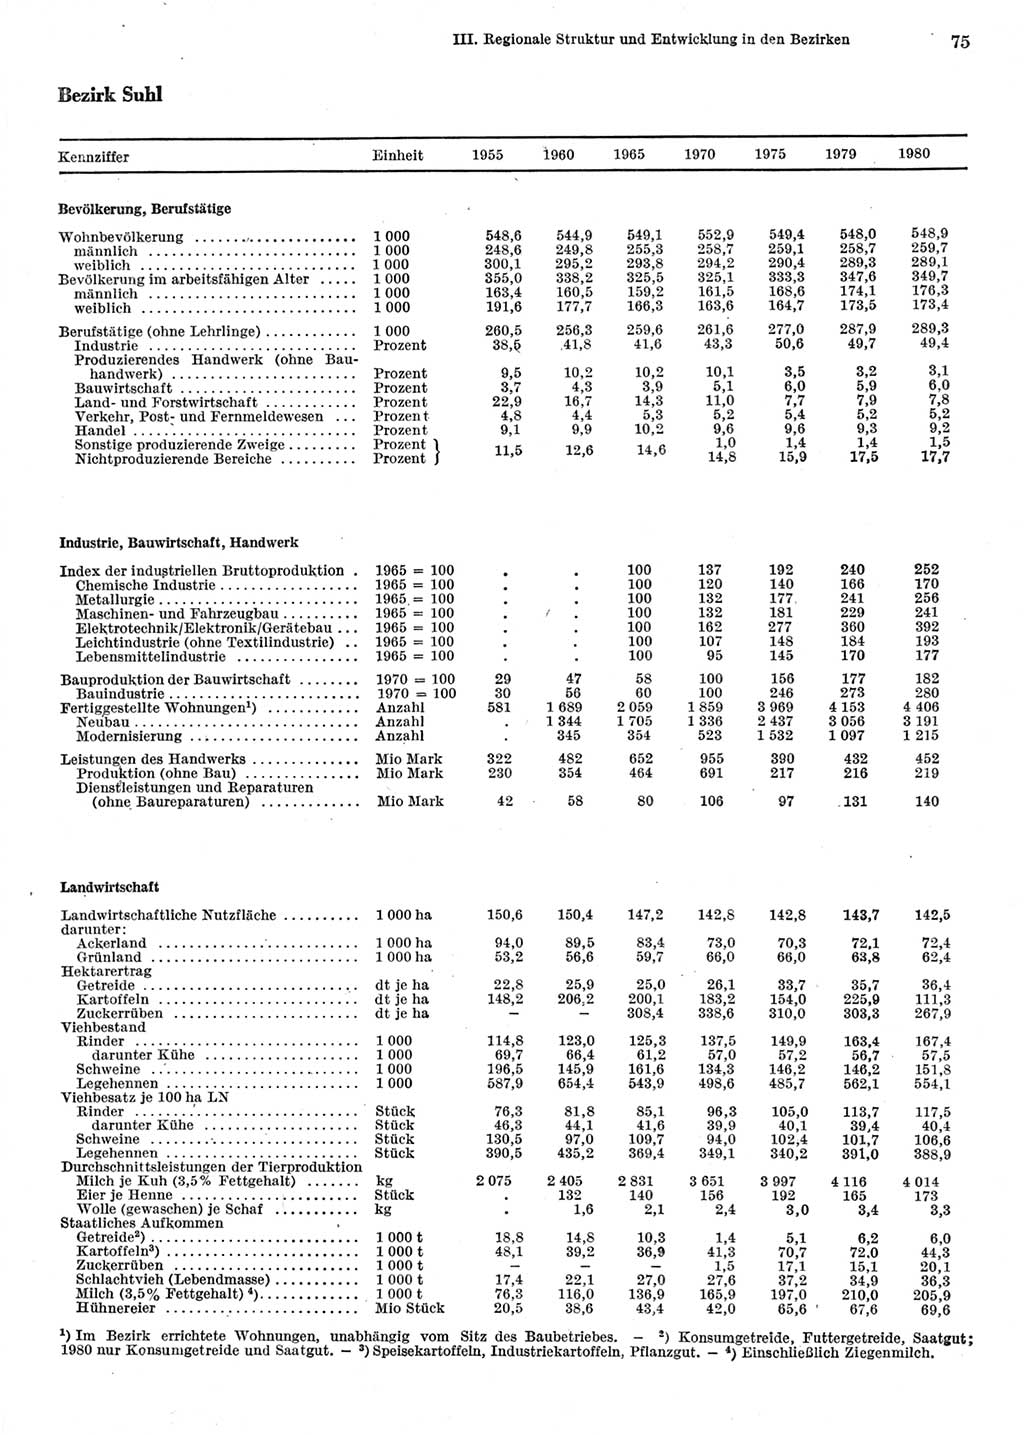 Statistisches Jahrbuch der Deutschen Demokratischen Republik (DDR) 1981, Seite 75 (Stat. Jb. DDR 1981, S. 75)